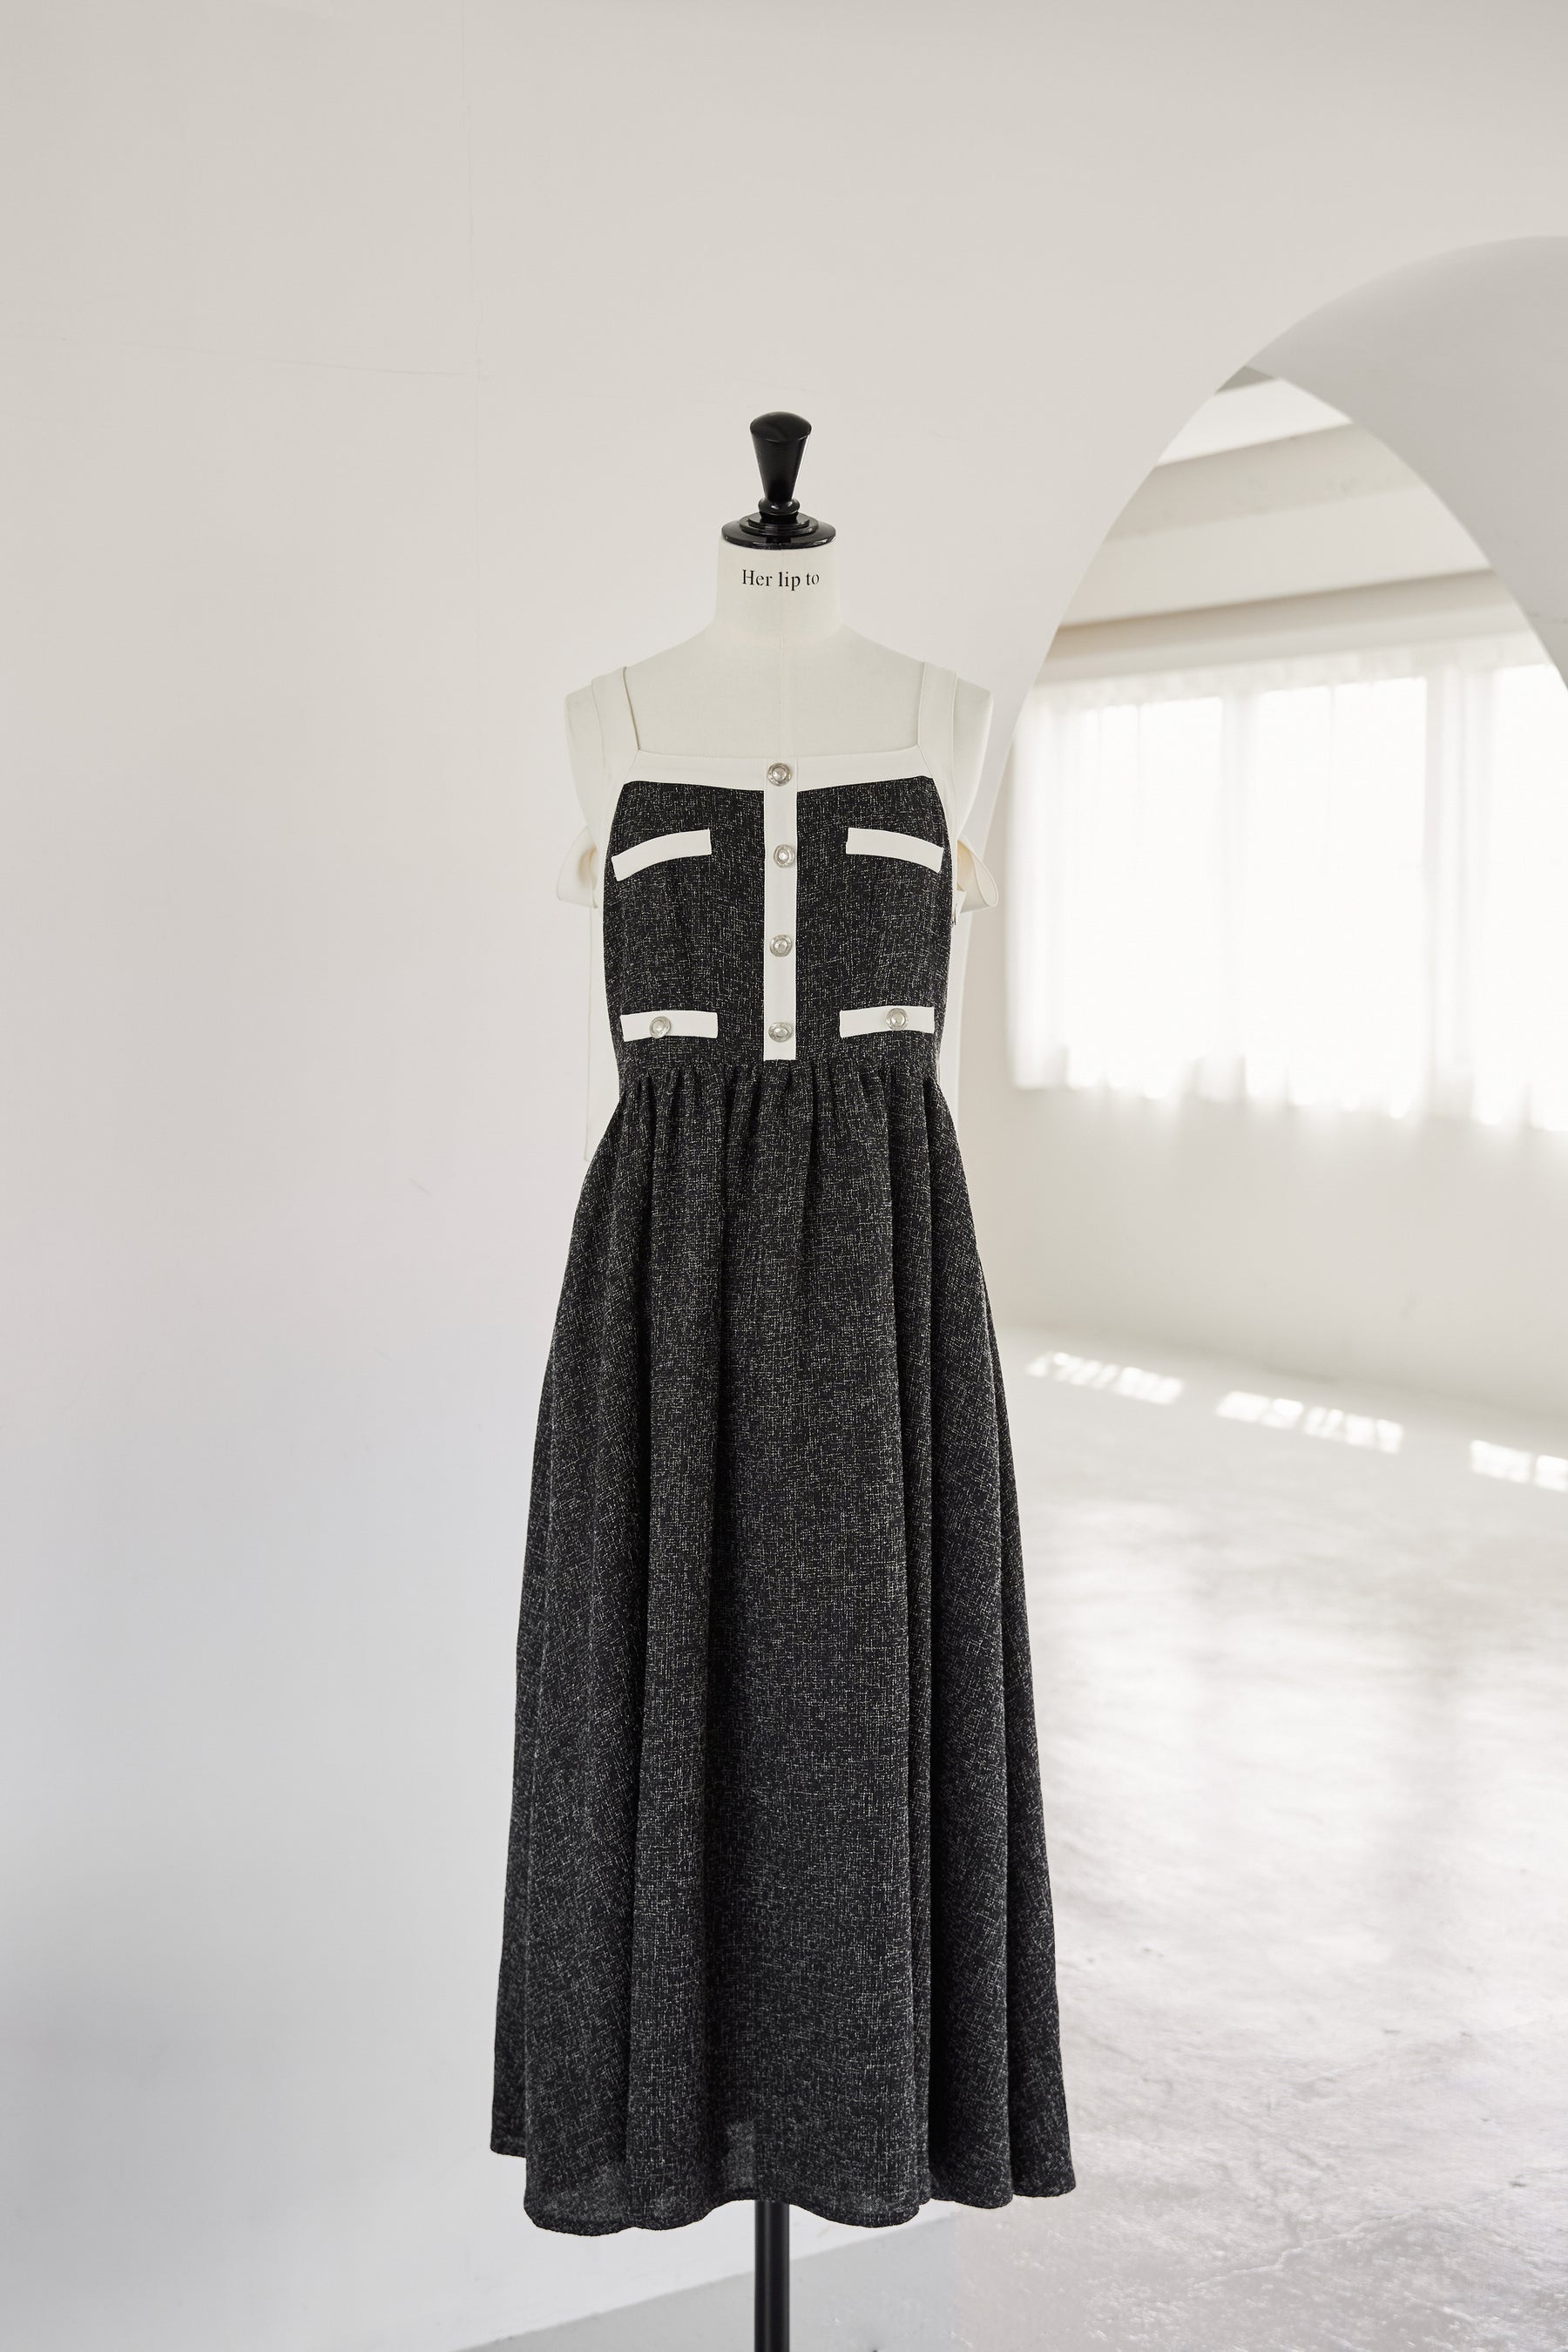 herlipto Verona Tweed Long Dress